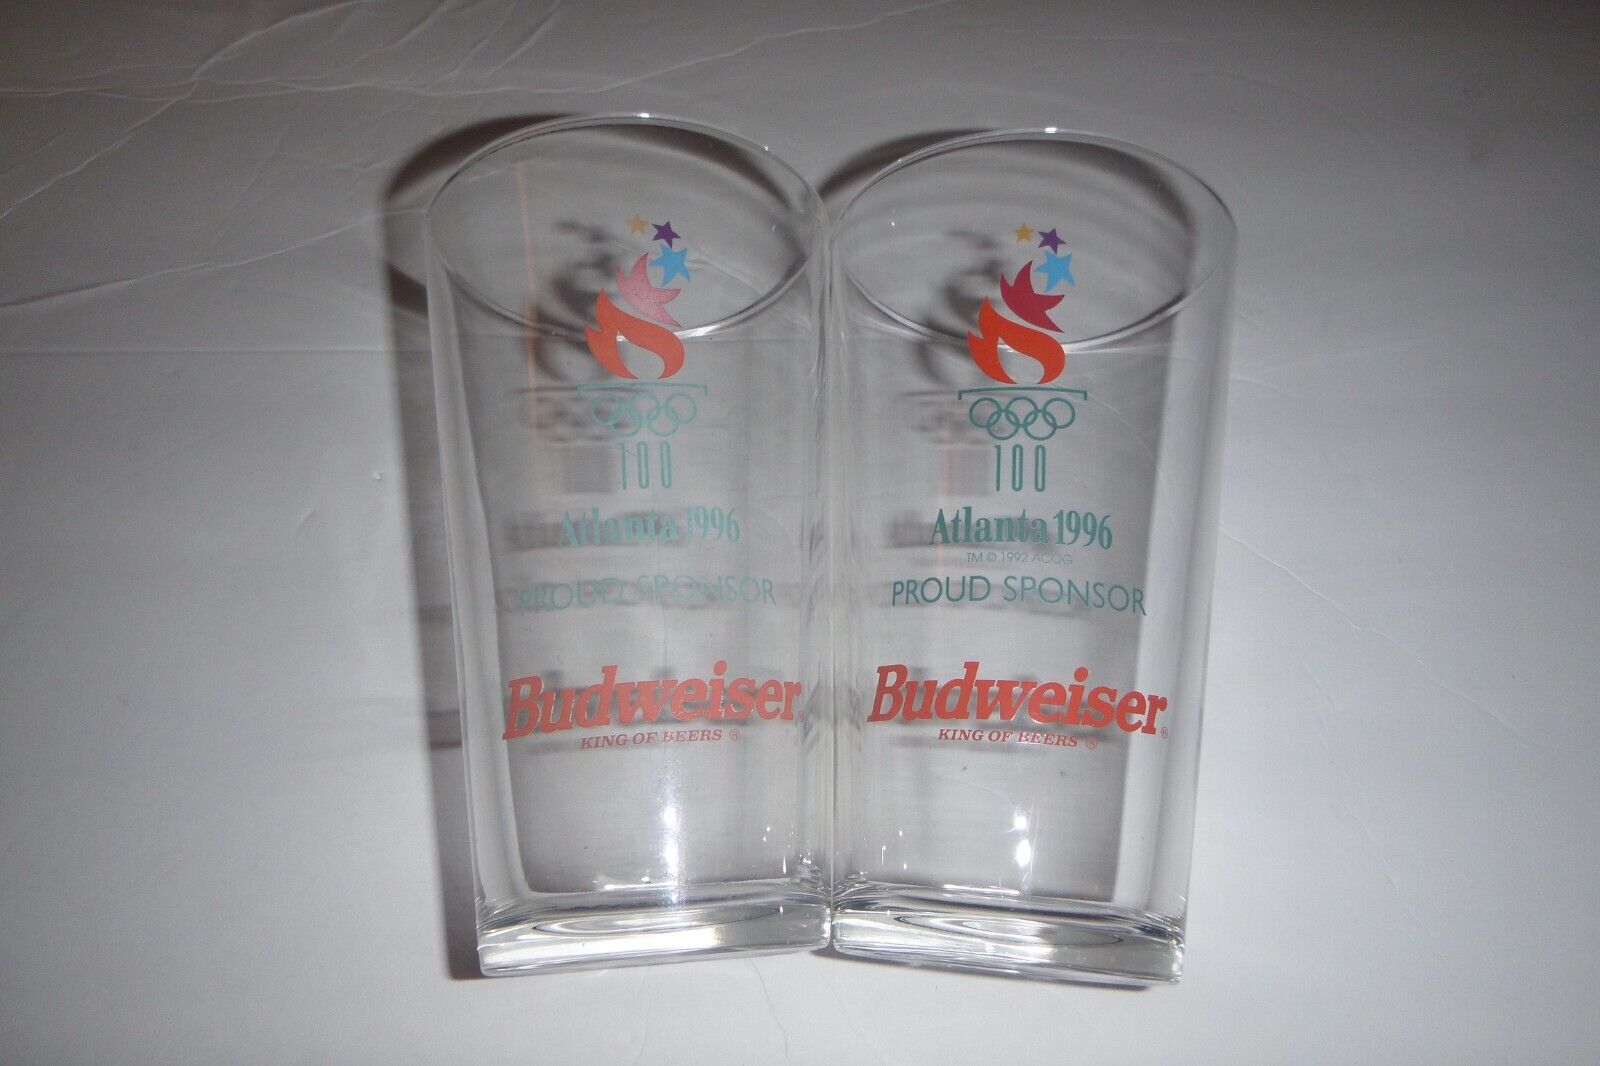 2 Pc Atlanta 1996 Proud Sponsor Bud Weiser King of Beers Glasses 6in tall